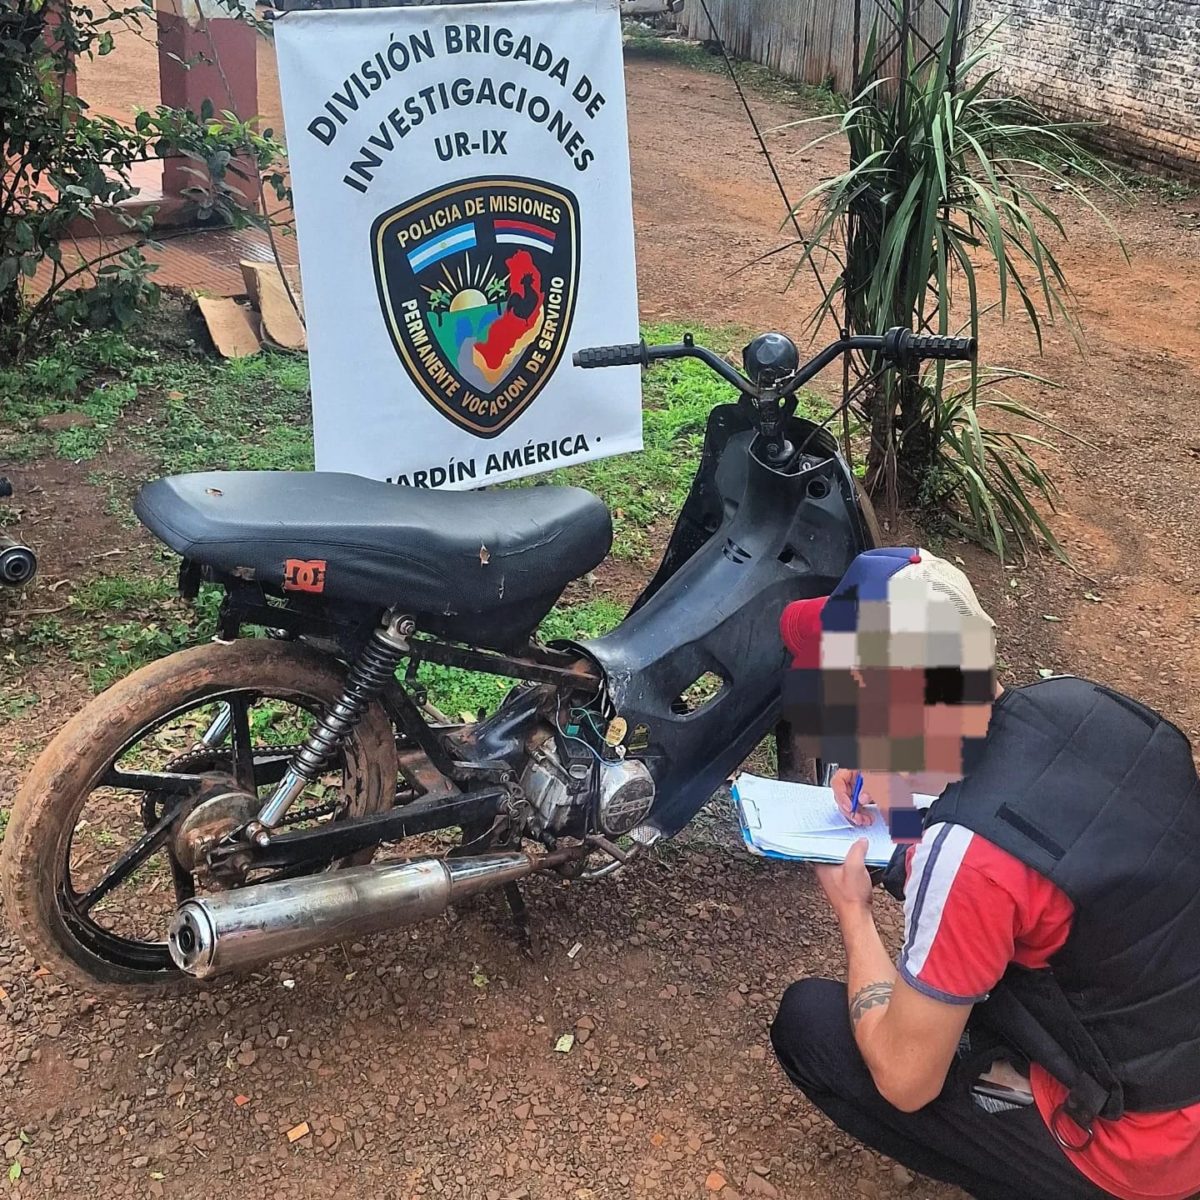 La Policía de Misiones recuperó 7 motos robadas por una banda delictiva en Jardín América y los integrantes continúan detenidos